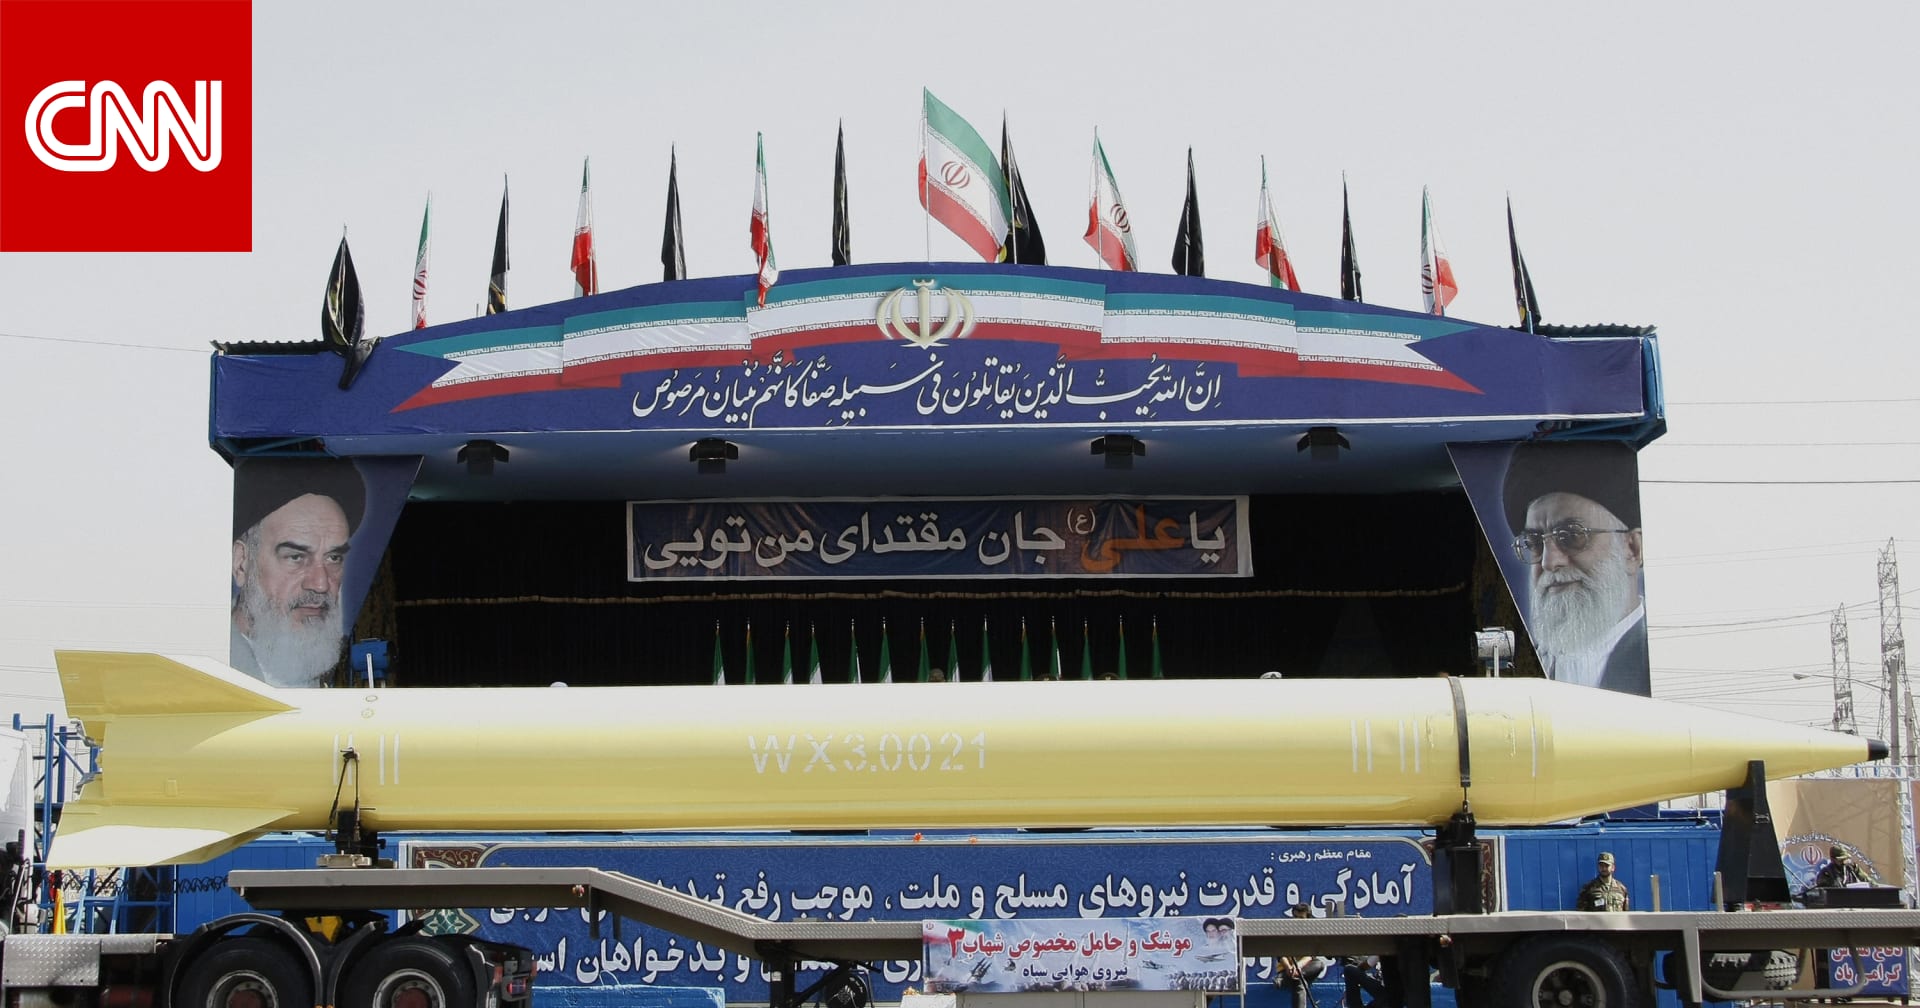 أول تعليق من أمريكا على تجربة إيران لصاروخها الباليستي “الأكثر تطوراً”